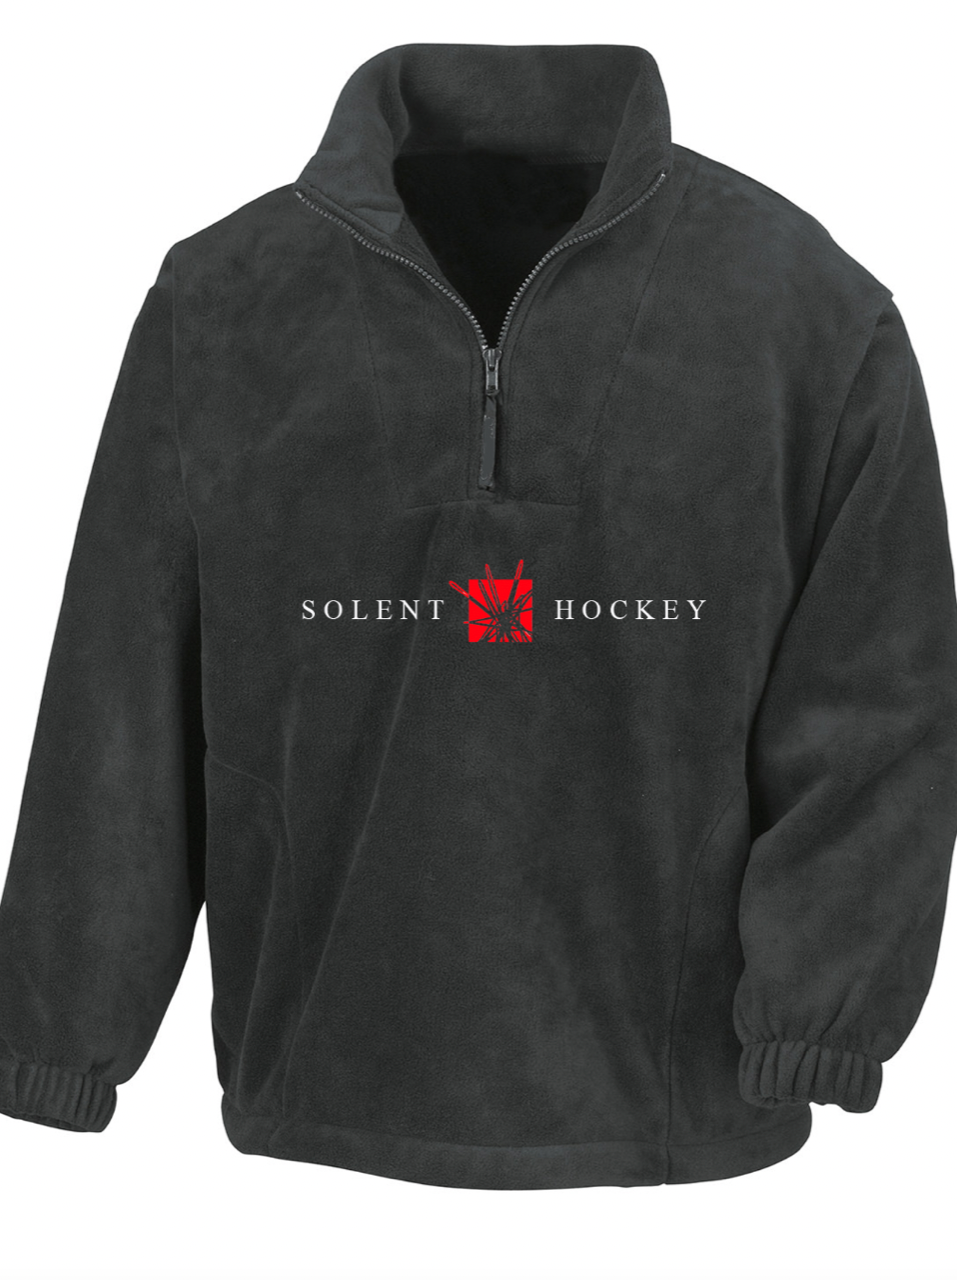 Solent Hockey Fleece